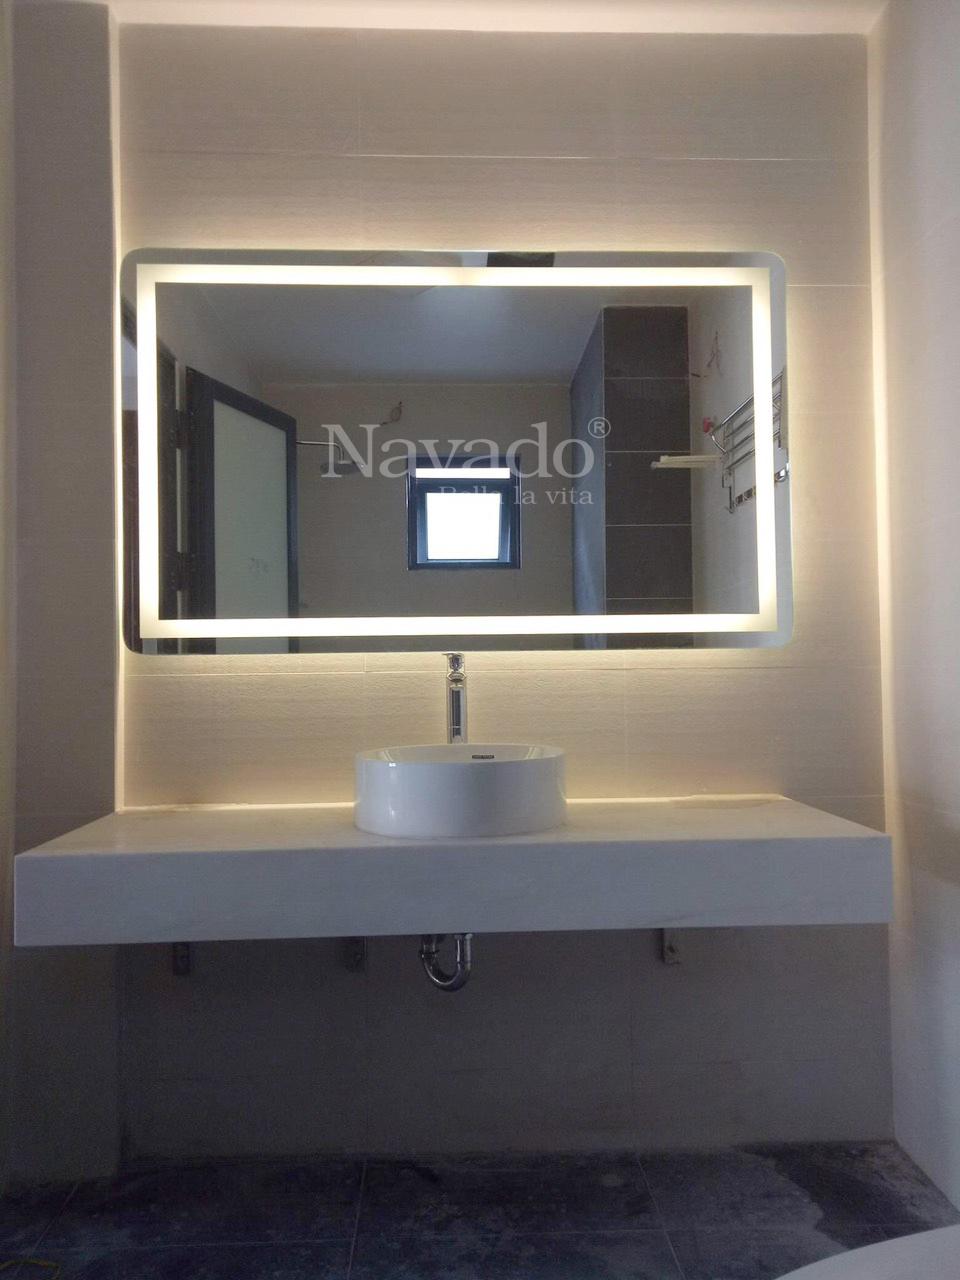 Một gương đèn led đẹp sẽ làm cho không gian phòng tắm của bạn trở nên sang trọng và hiện đại hơn. Với độ sáng tuyệt vời và màu sắc tinh tế, bạn sẽ không muốn bỏ lỡ cơ hội thưởng thức thiết bị tuyệt vời này cho không gian phòng tắm của bạn.